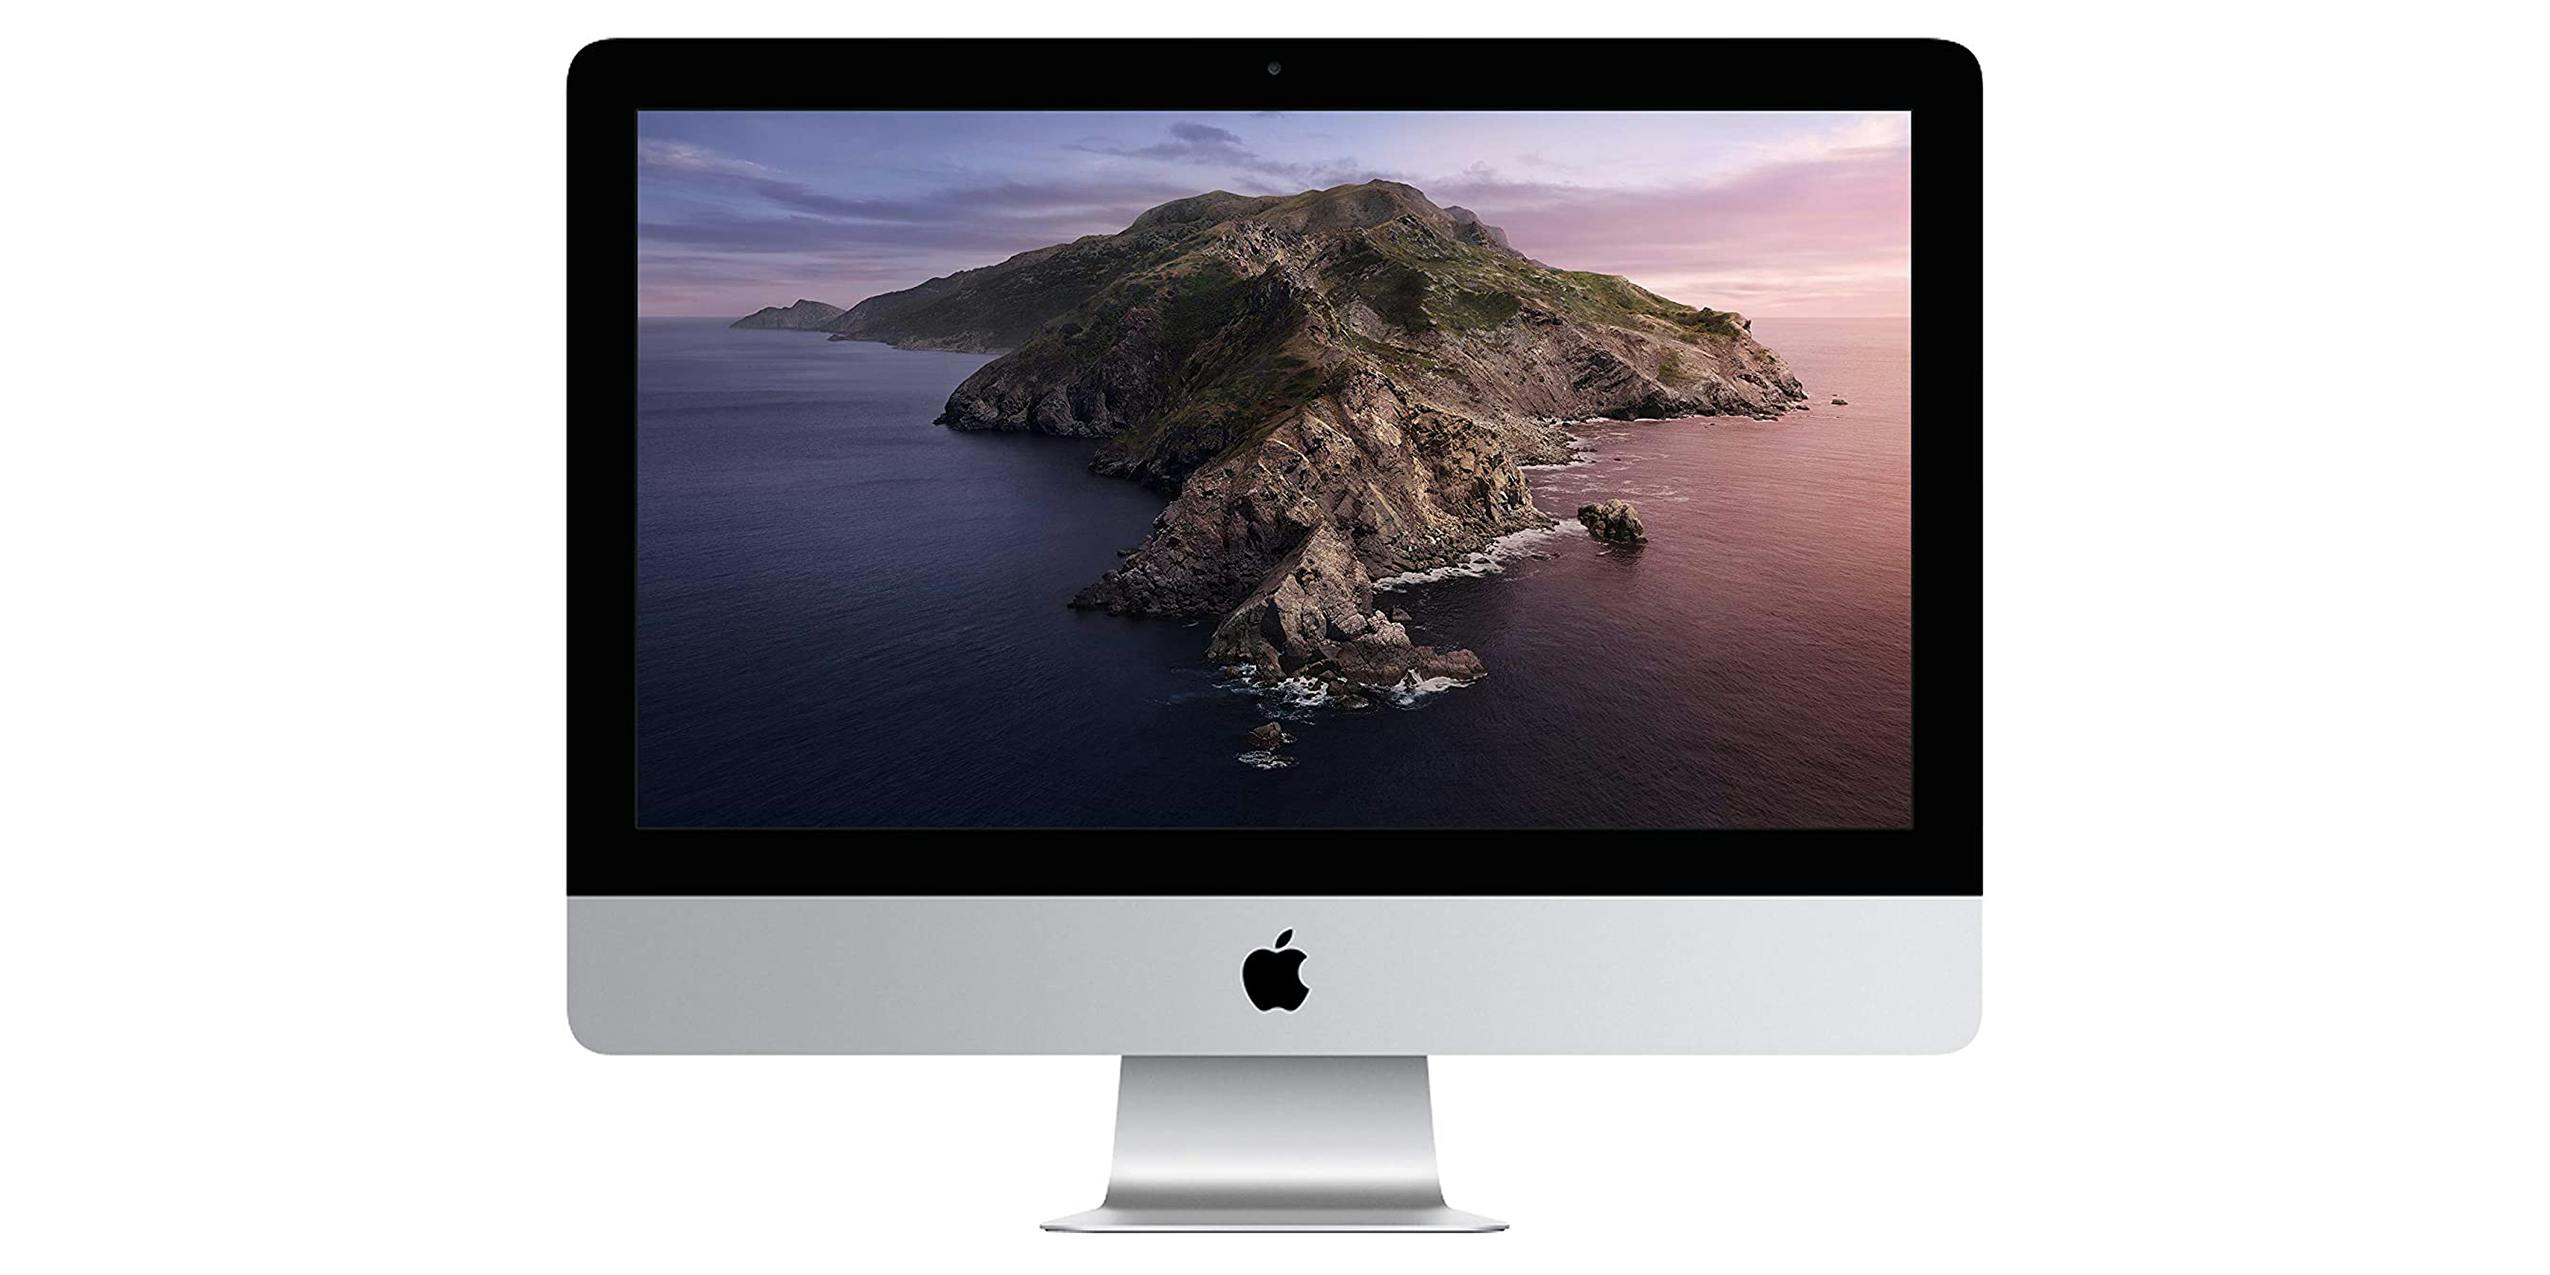 iMac 2020 product image.